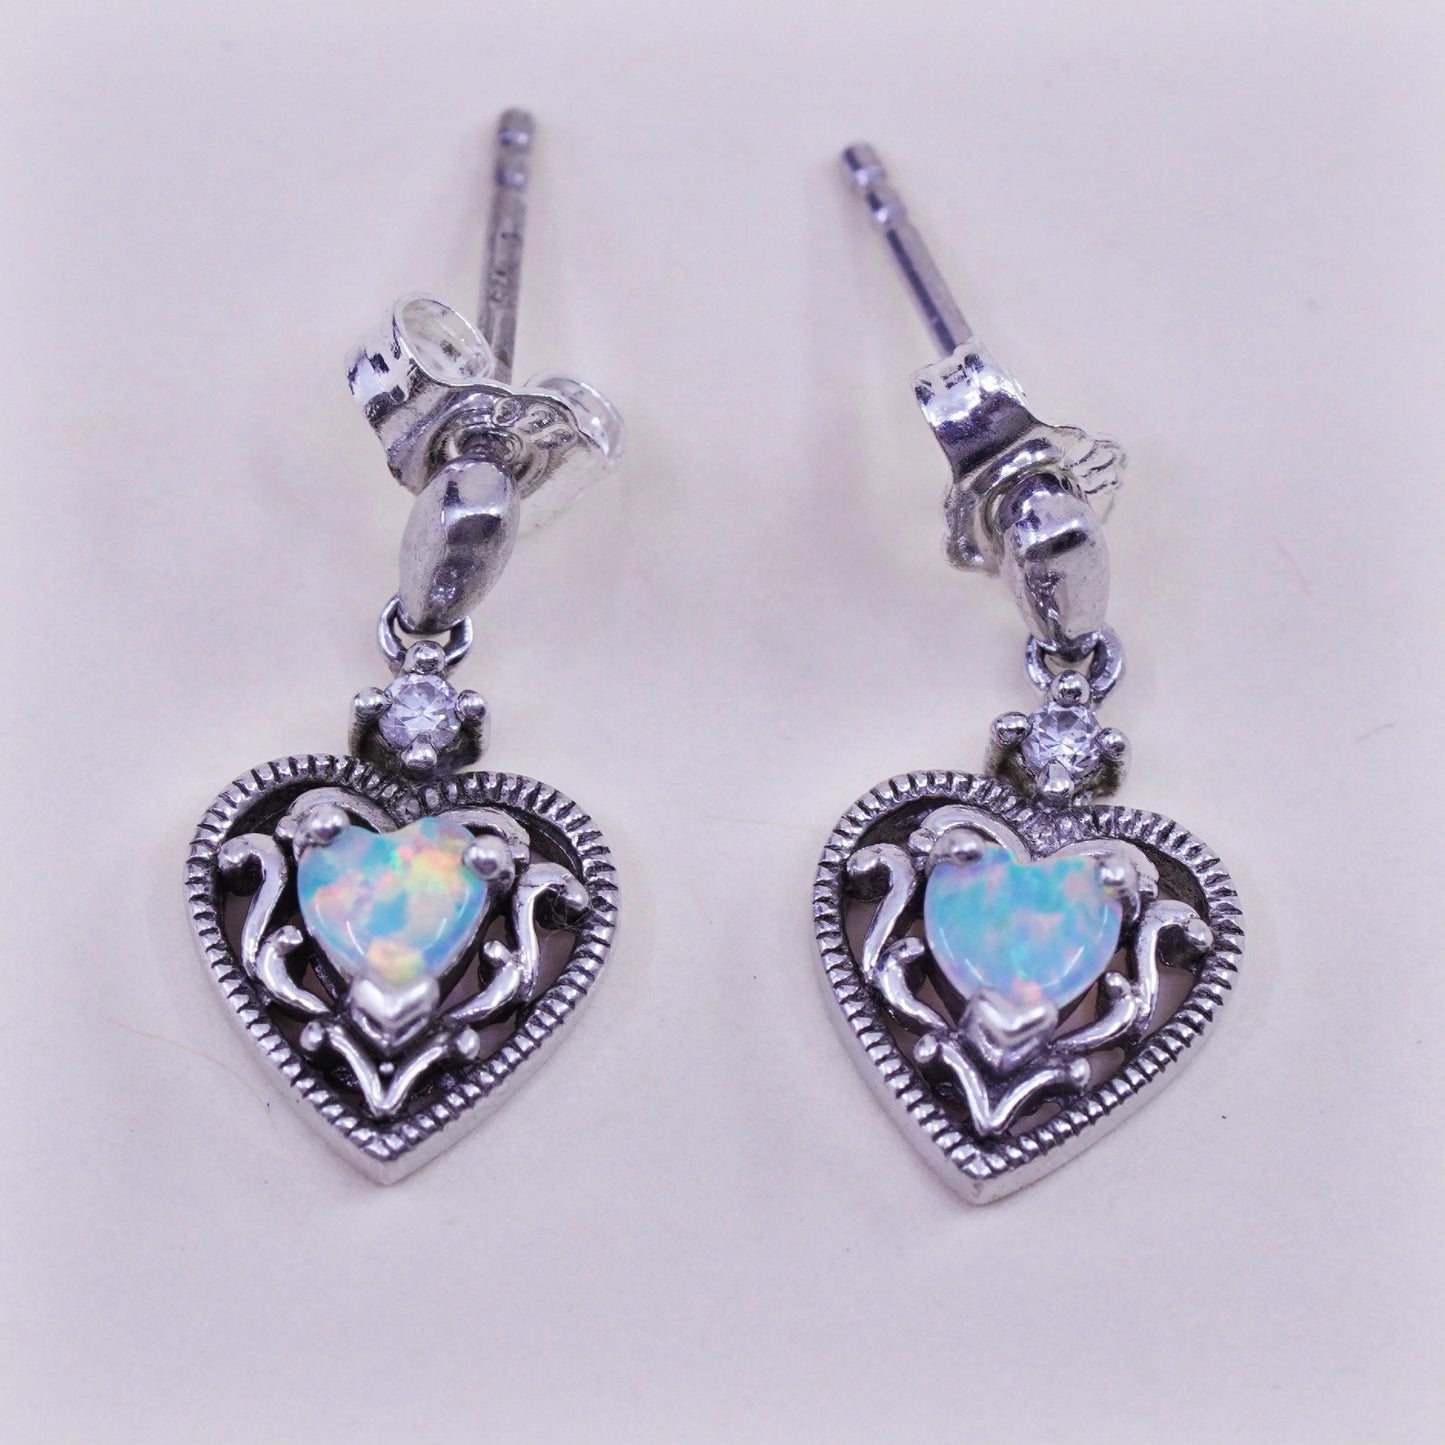 Vintage southwestern sterling 925 silver handmade heart earrings with opal